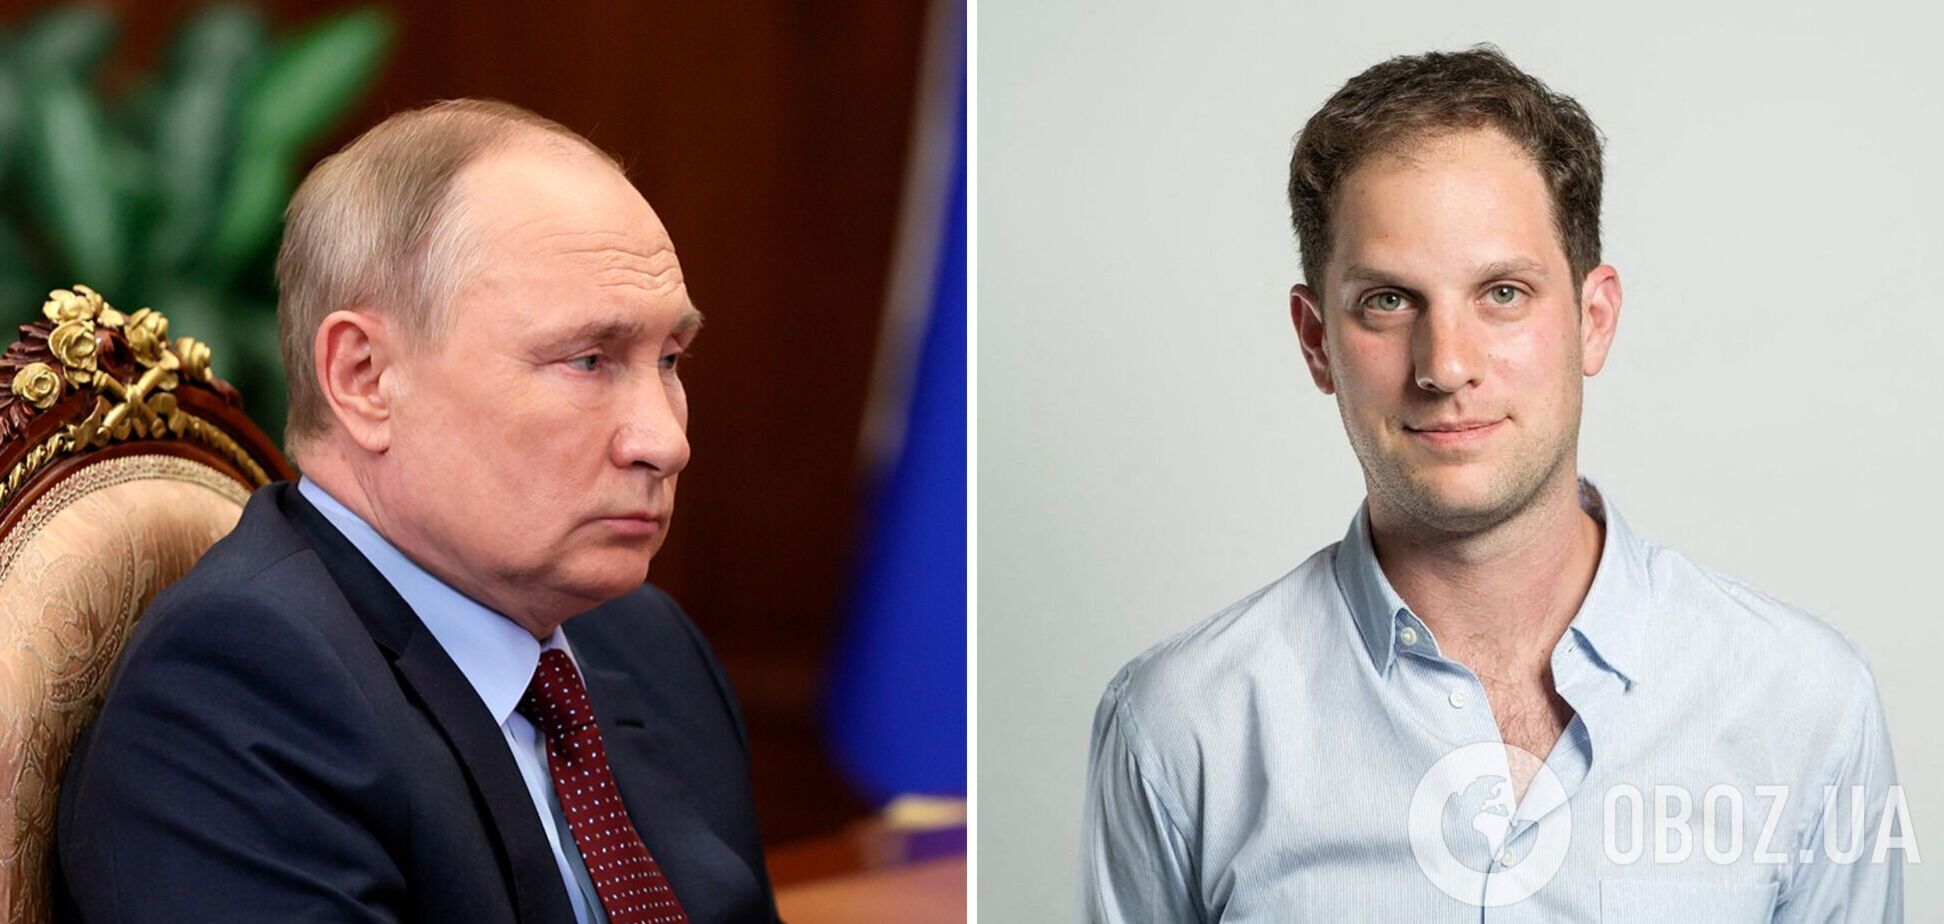 Путин лично отдал приказ арестовать журналиста WSJ Гершковича – Bloomberg